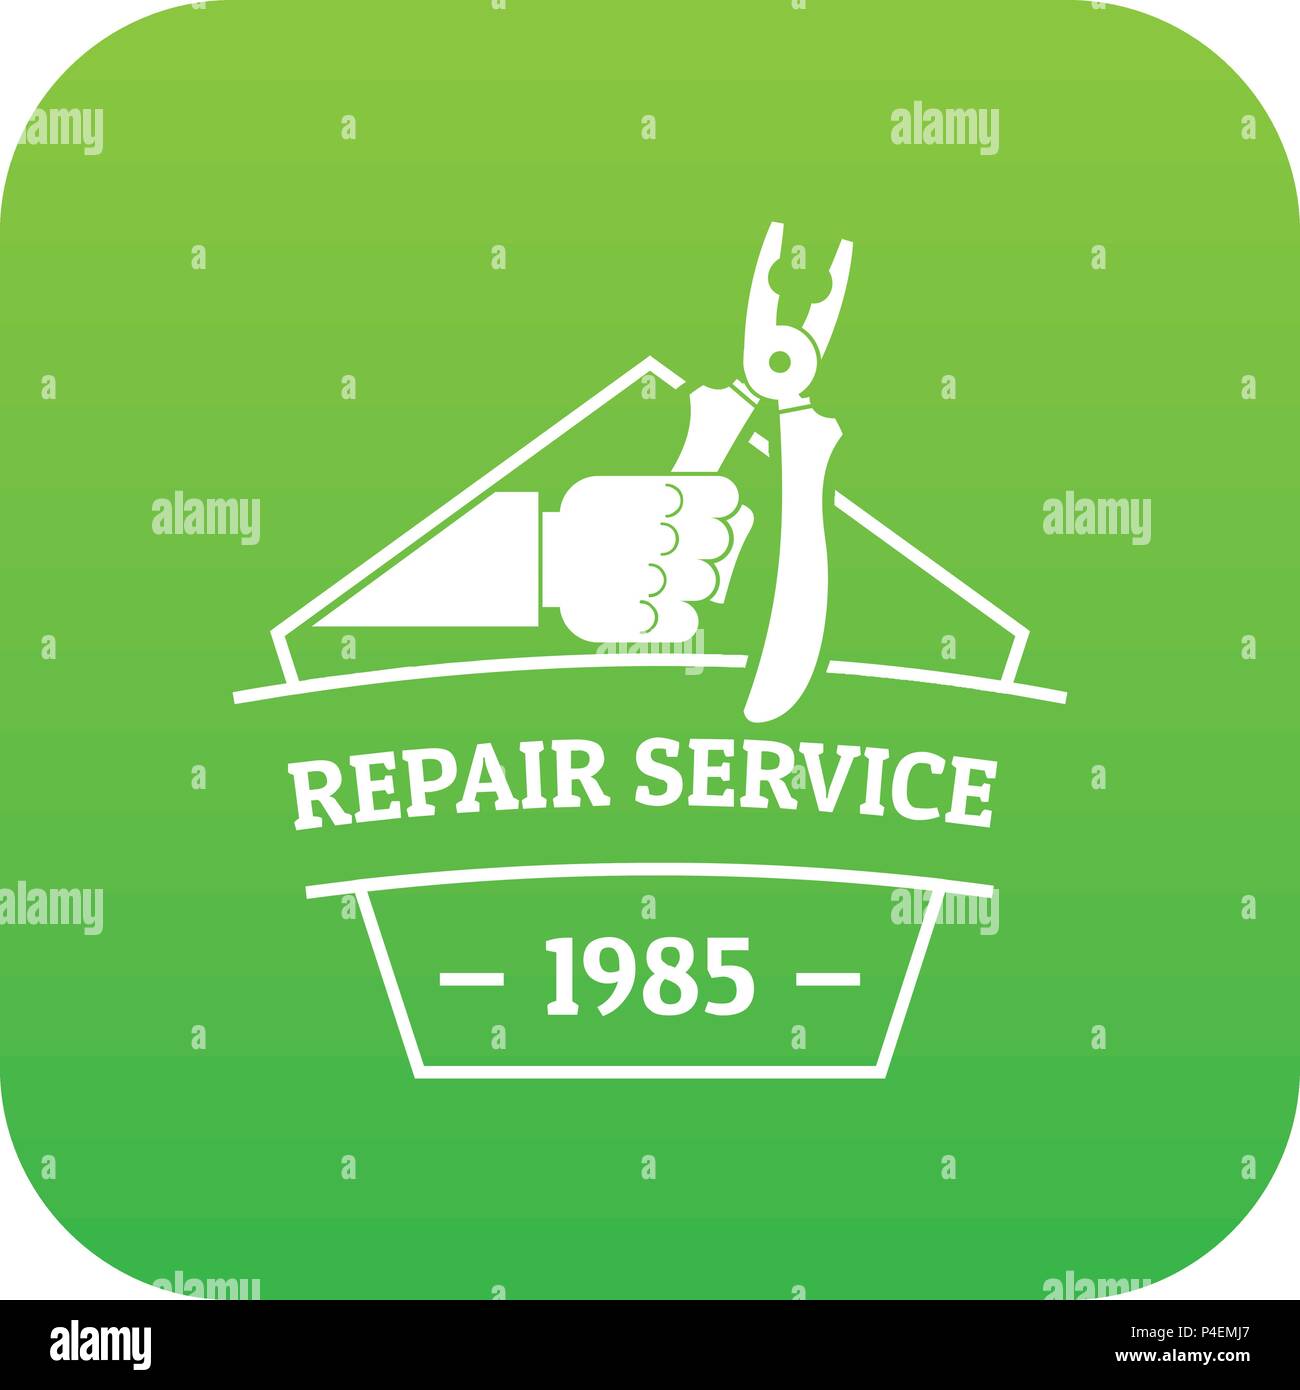 Repair service icon green vector Stock Vector